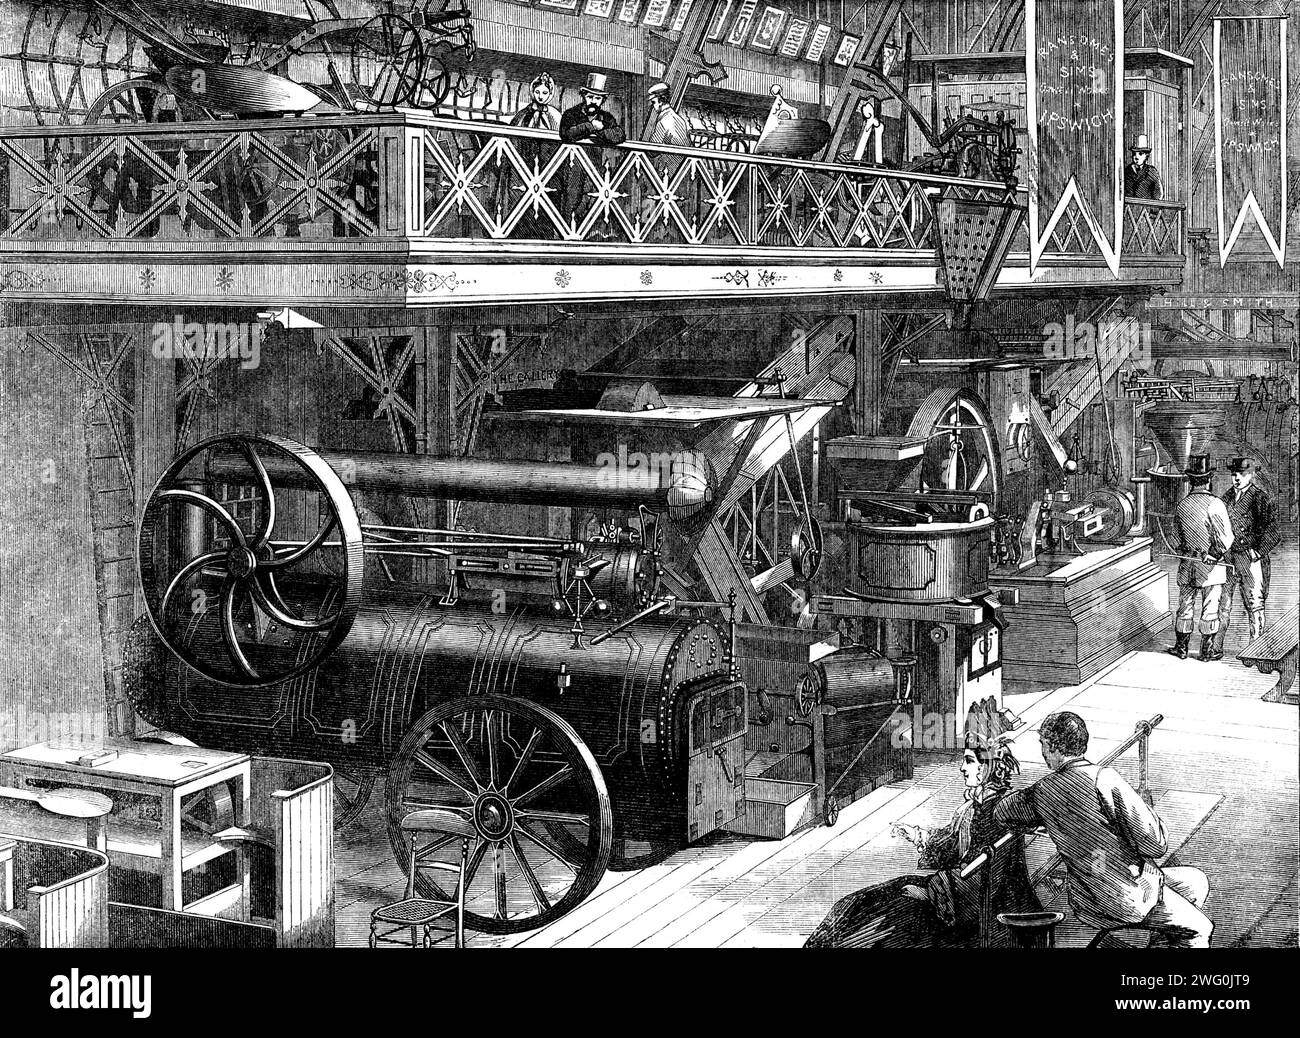 The International Exhibition: Ransome and Sims' Agricultural Machinery - von einer Fotografie der London Stereoscopic Company, 1862. "Zu den großen Veränderungen, die den Fortschritt der britischen Landwirtschaft in den letzten zwanzig Jahren kennzeichneten, kaum einer ist bemerkenswerter als die Bereitschaft, mit der die Landwirtschaftsbetriebe die Verwendung von Maschinen übernommen haben... in diesem Gewerbe ist der Name, der am deutlichsten hervorhebt... der von Ransome... der die größte...[und] die umfassendste Ausstellung von Landmaschinen in der Sektion hat... Ein Kasten mit Gold, Silber, und Bronzemedaillen Stockfoto